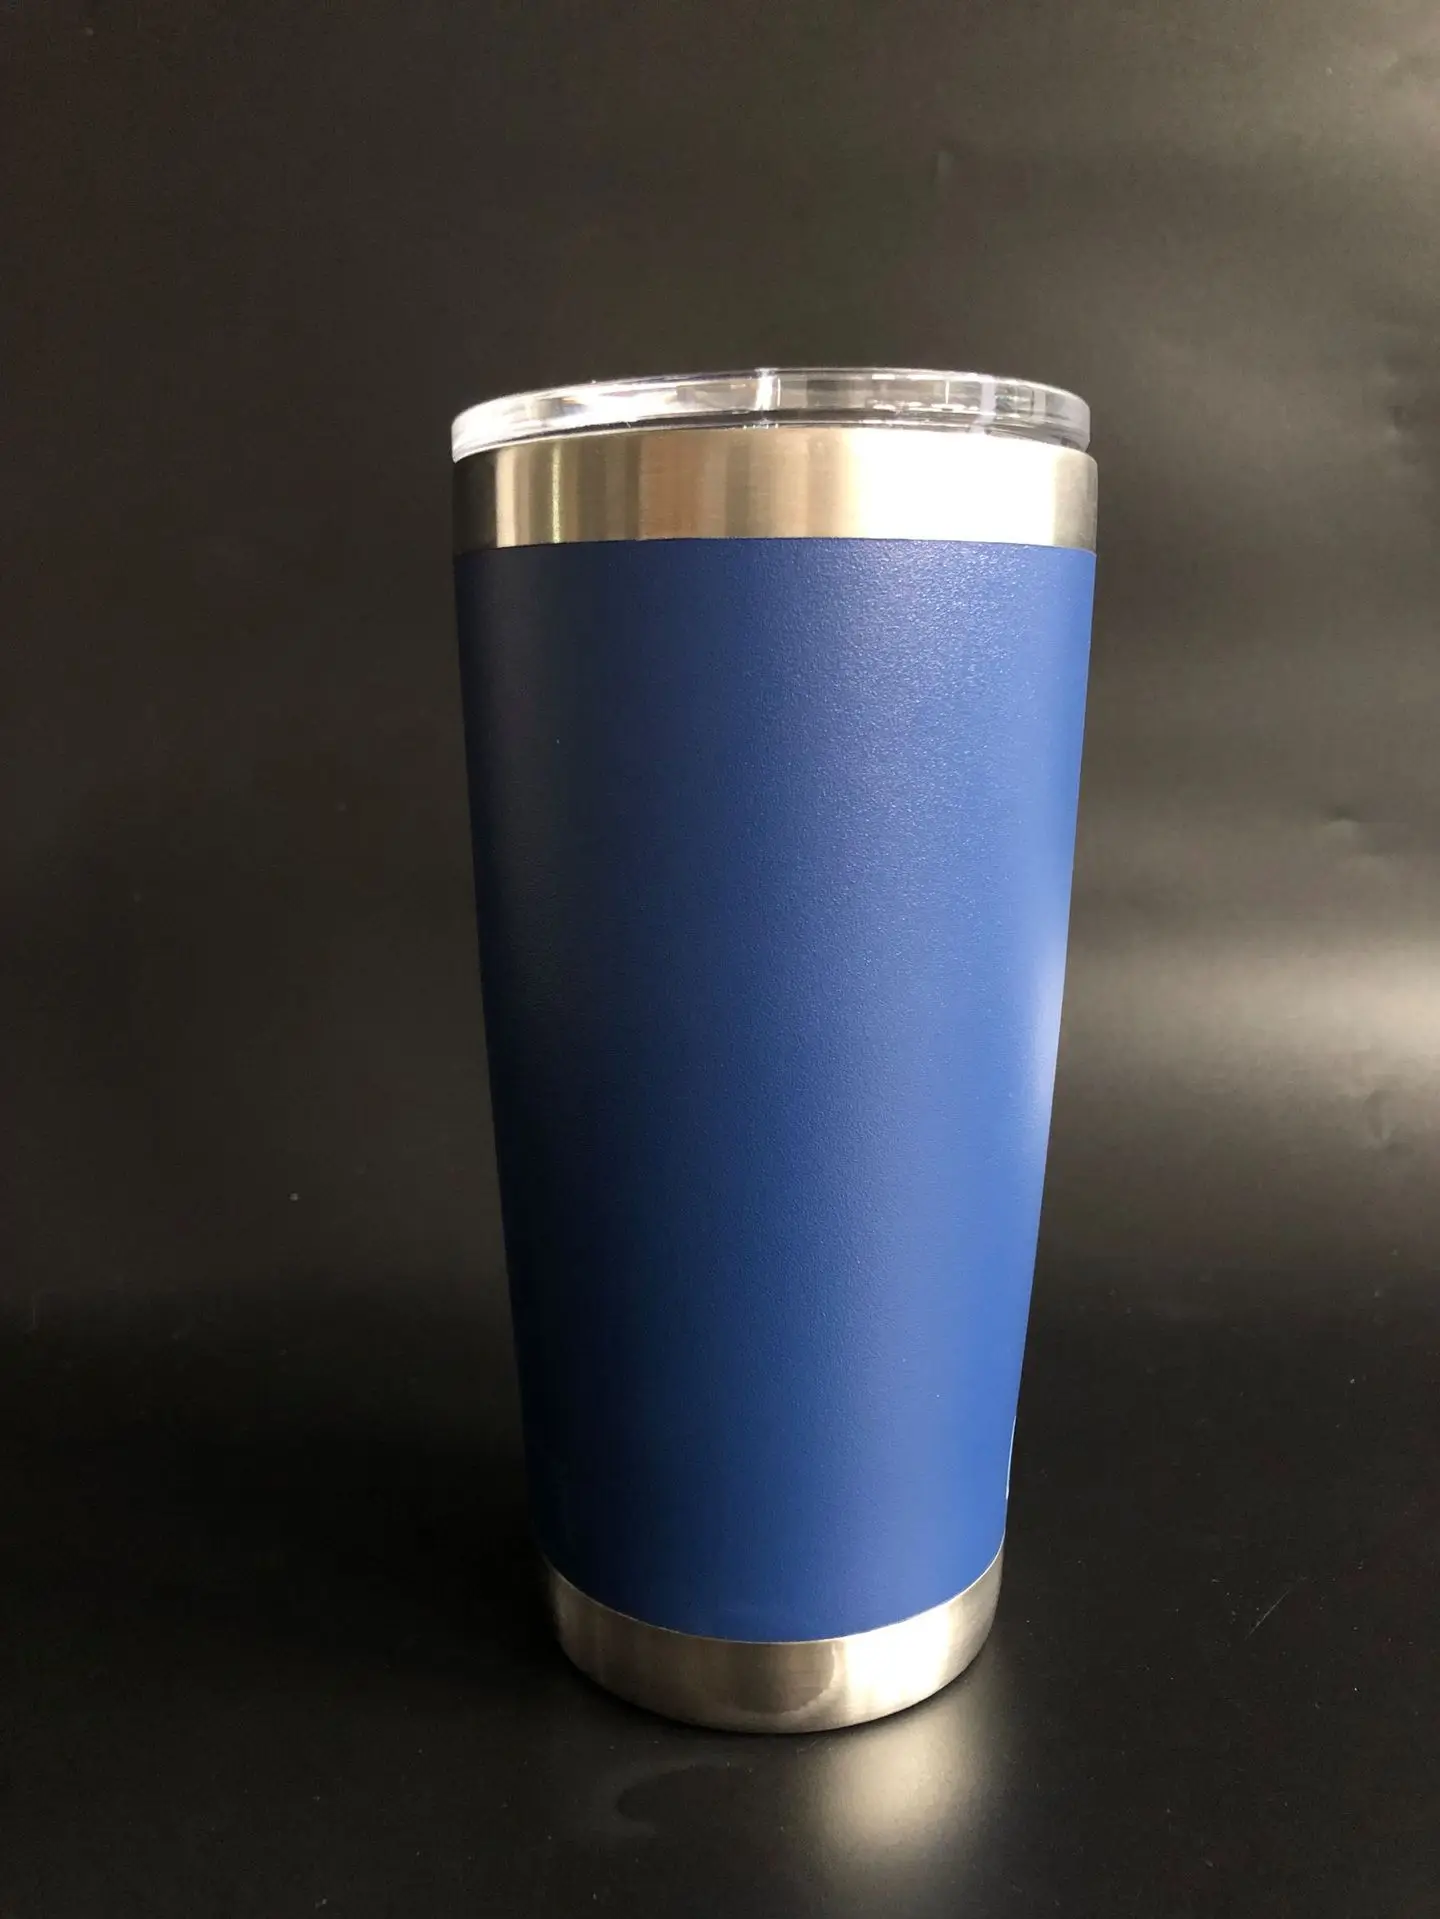 20 oz Крышка для стакана-шейкера путешествия Келлер-подарок с двойными стенками вакуумной изоляцией из нержавеющей стали-18/8 Нержавеющая сталь термос GMBH бутылка для воды - Цвет: blue